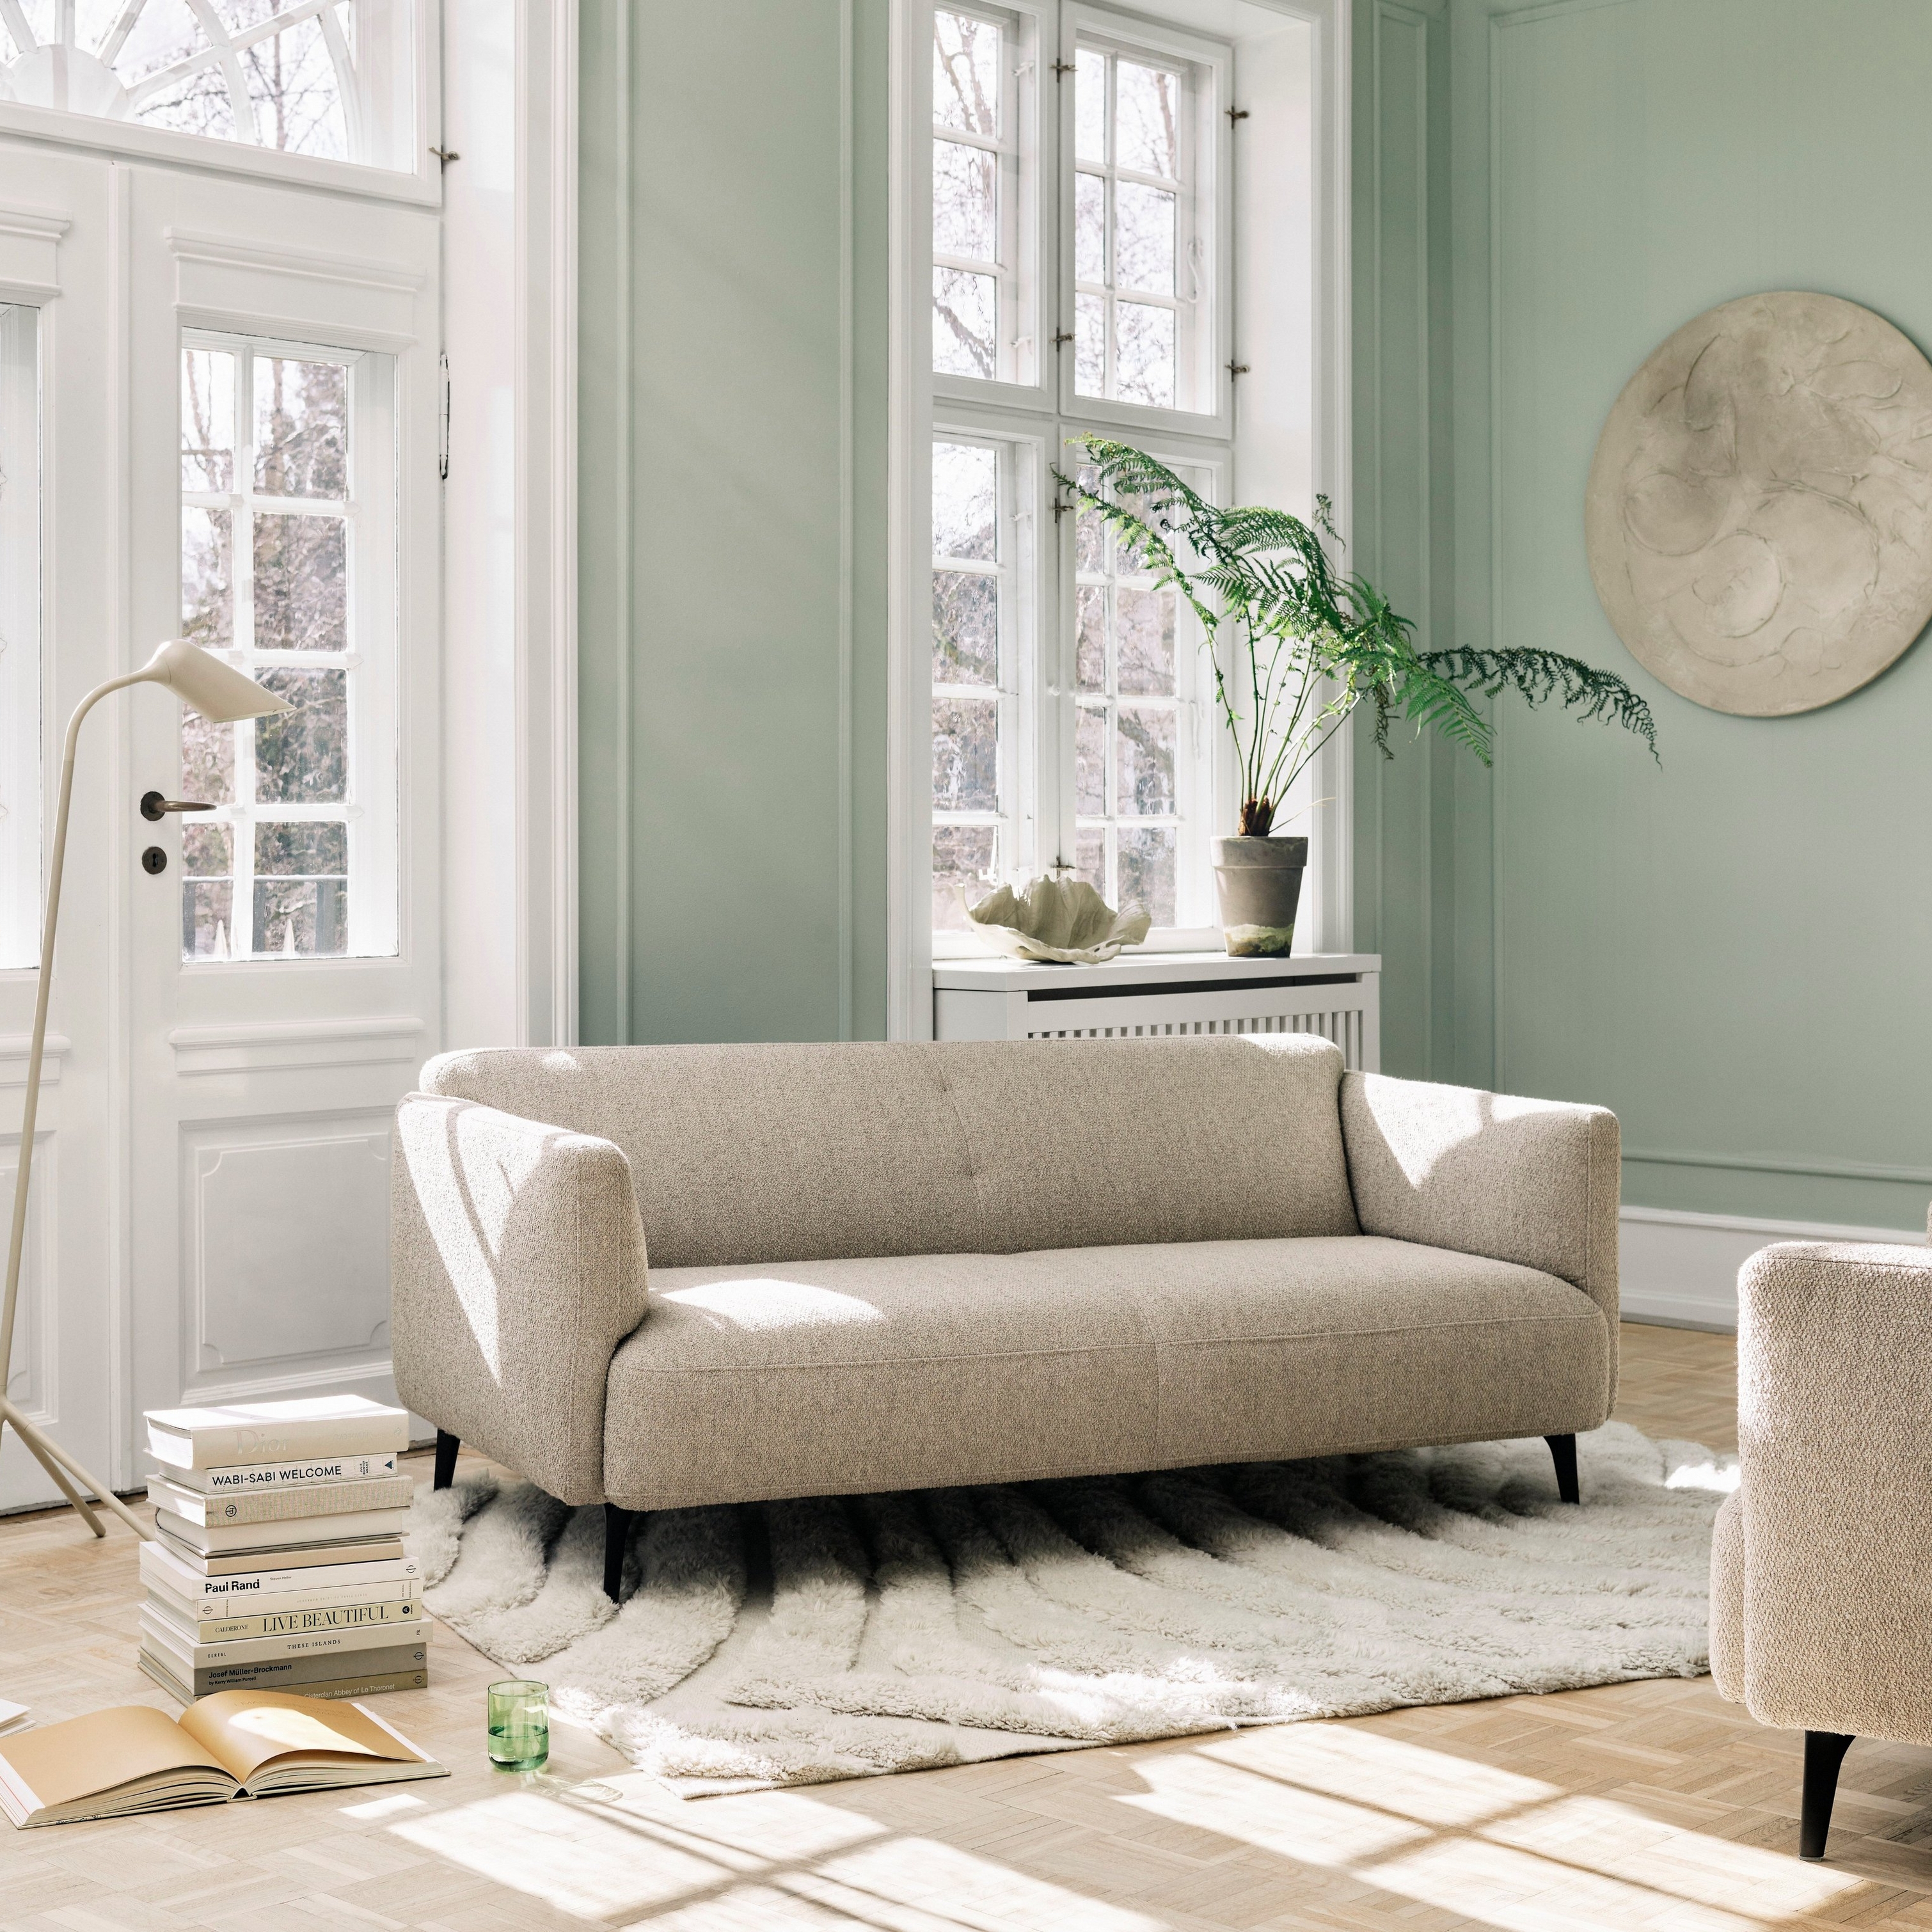 Modernt och neutralt vardagsrum med Modena soffa och Curious golvlampa.